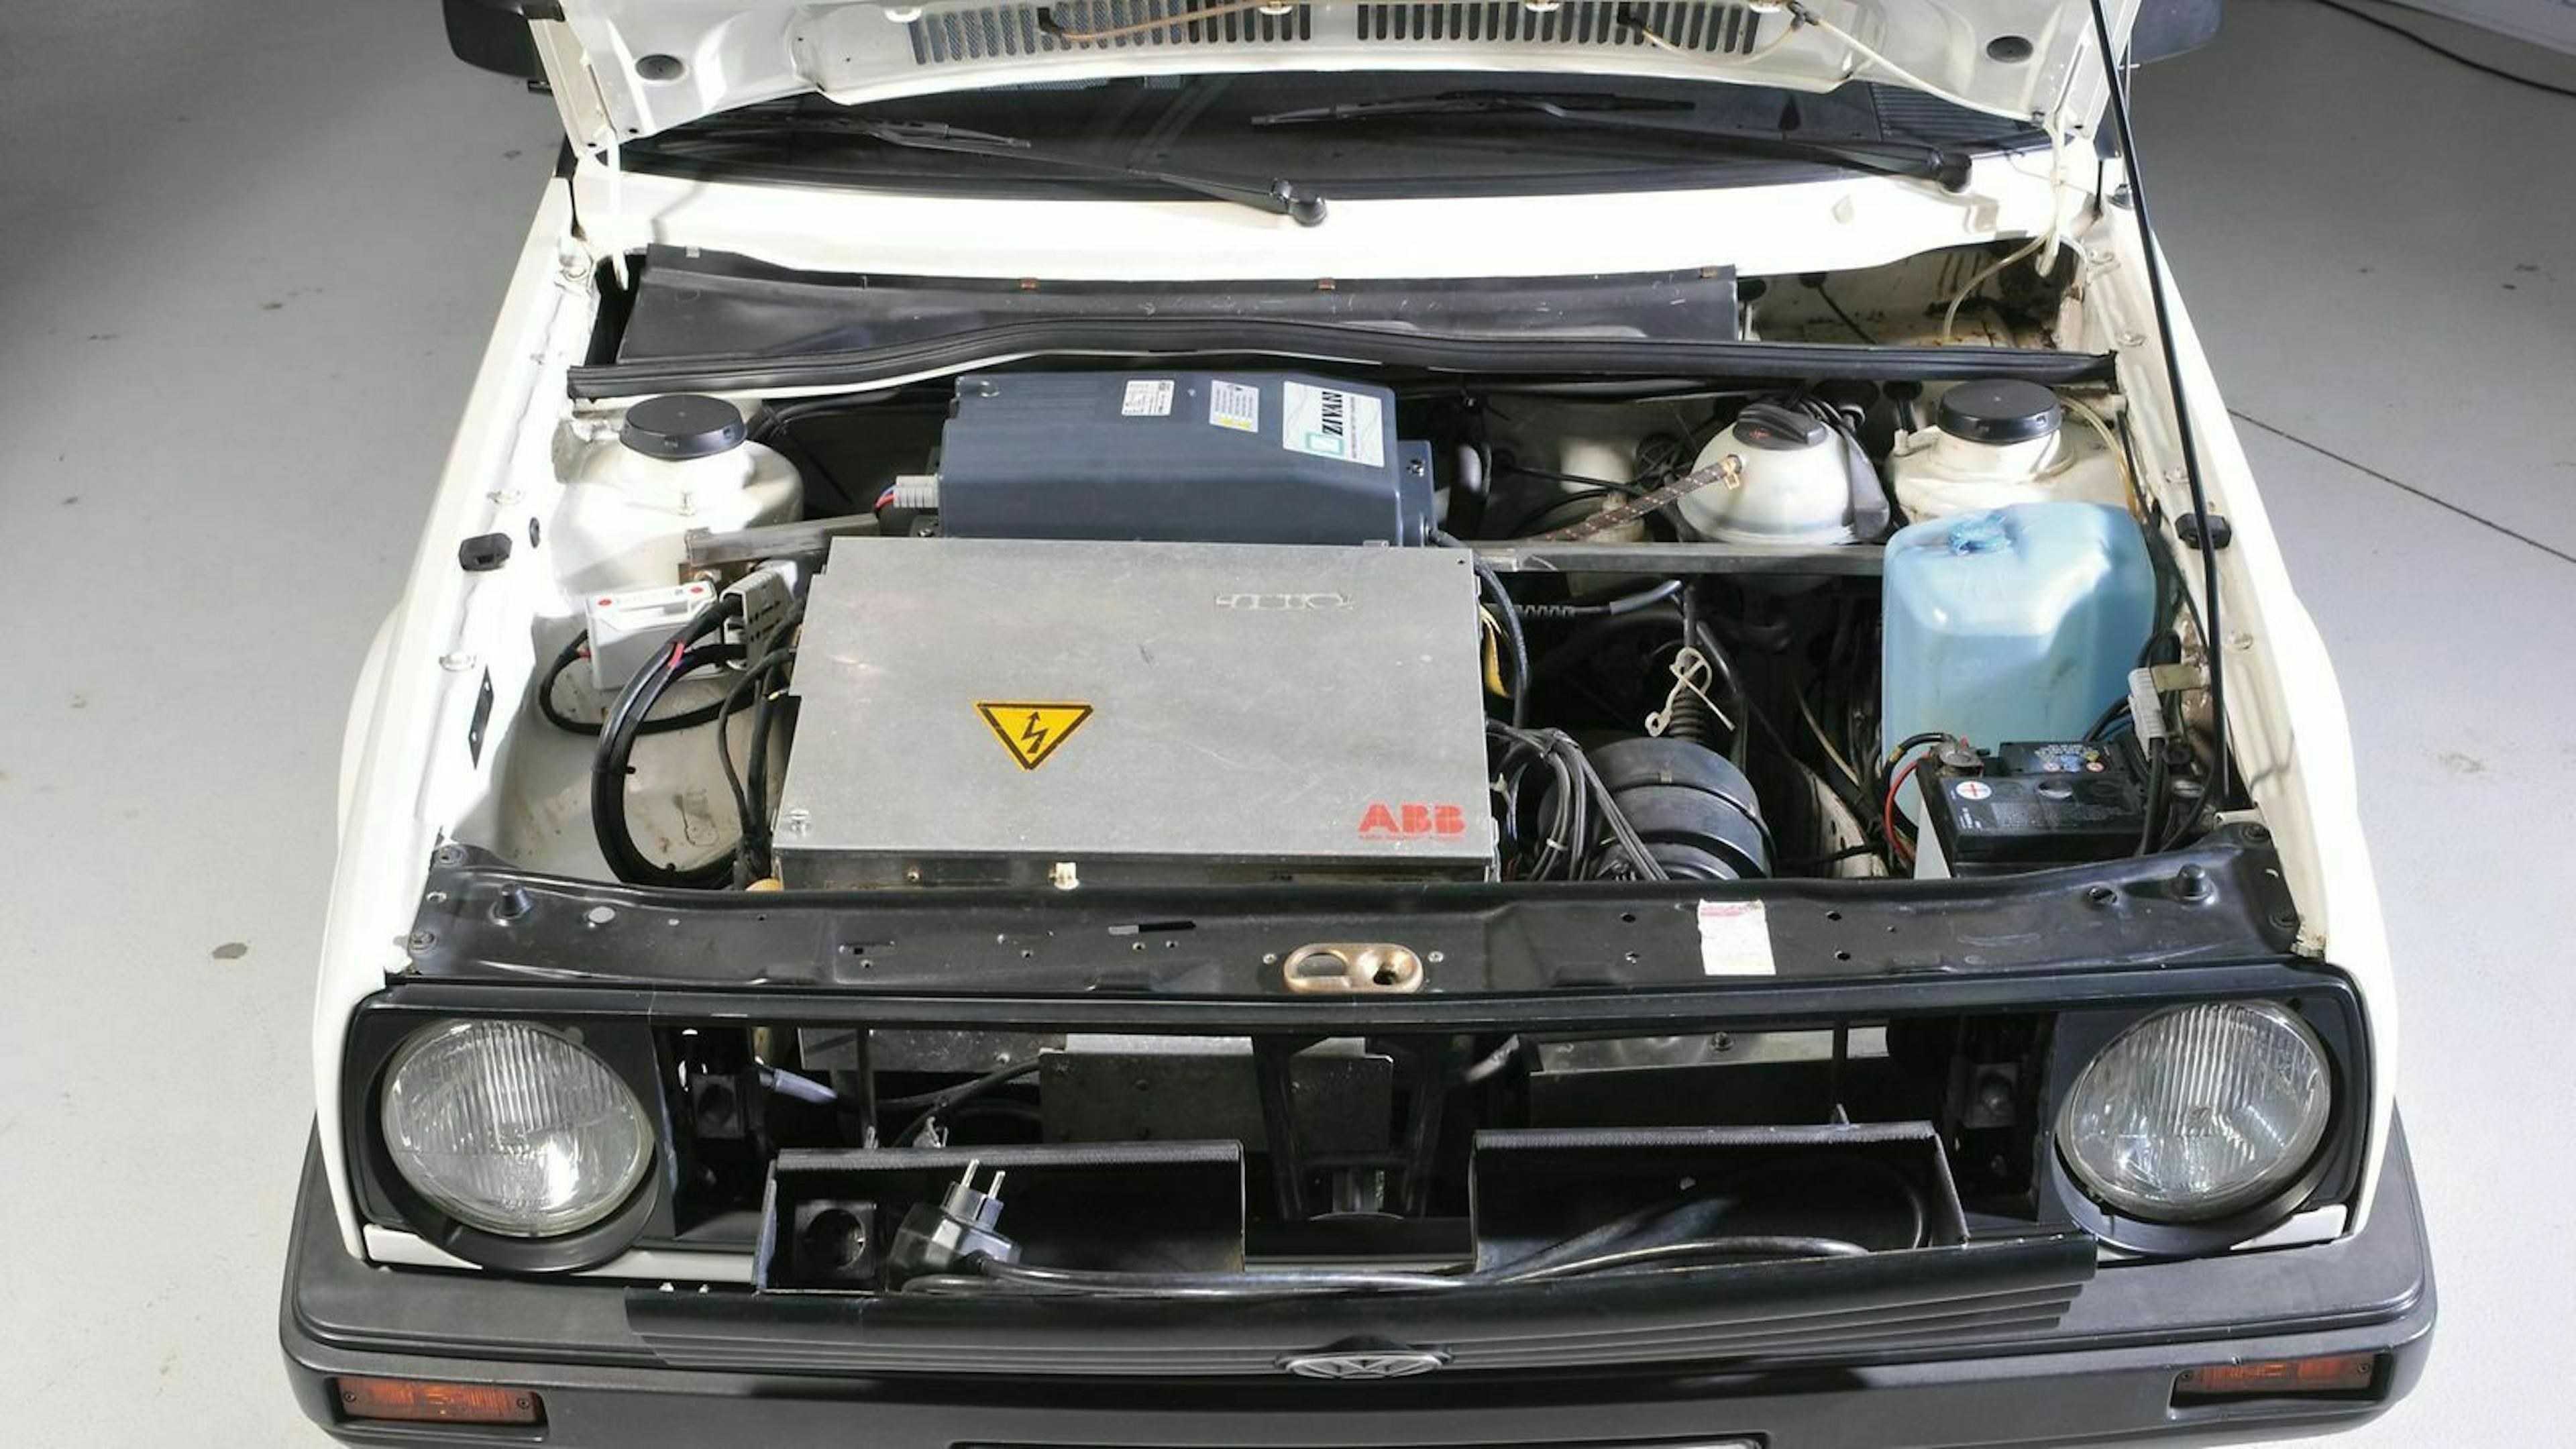 Zu sehen ist ein E-Motor im VW Golf II